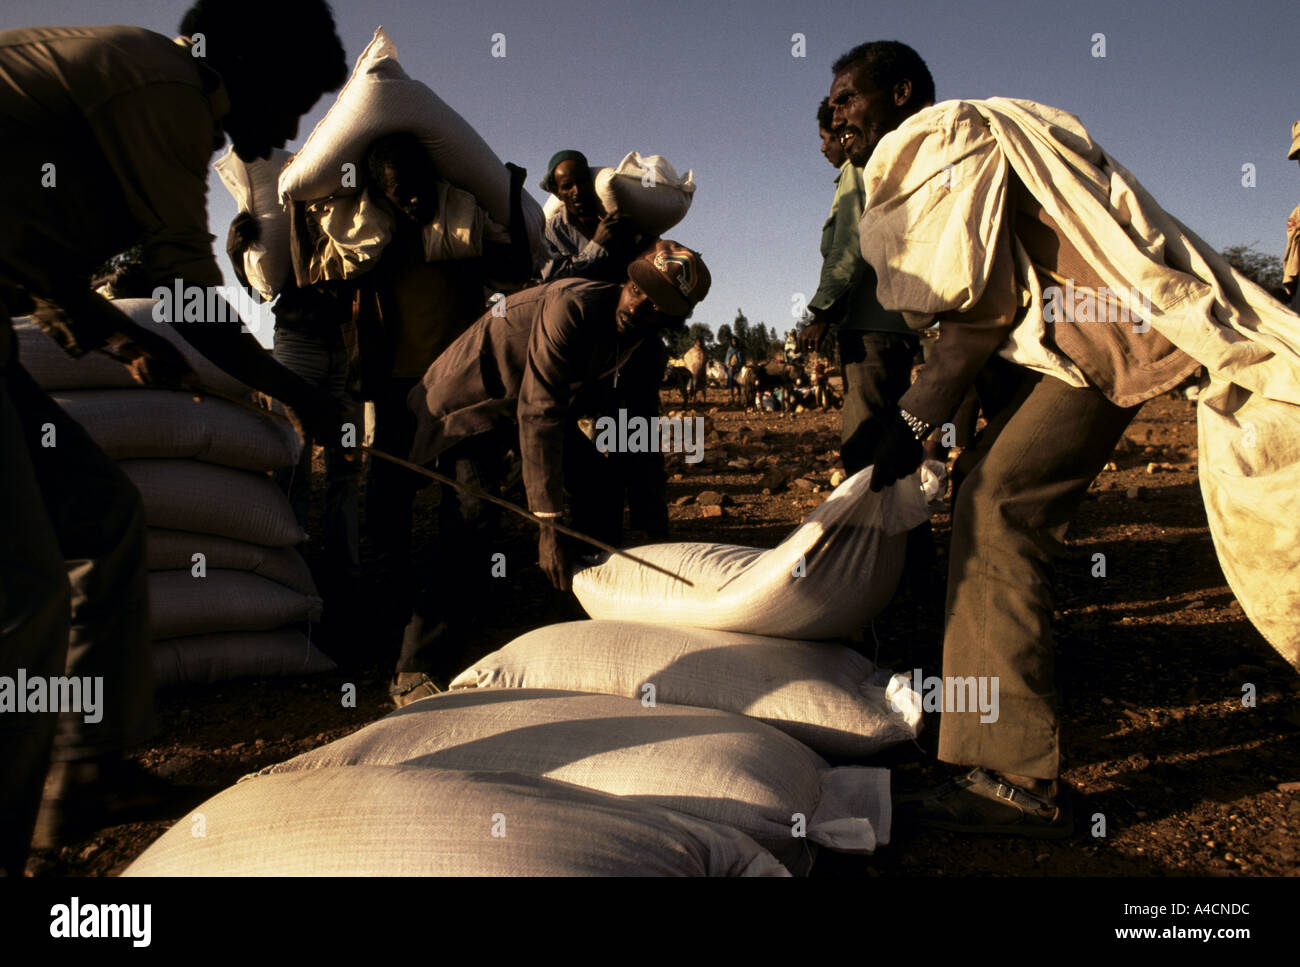 La venuta di una nuova carestia, MESHAL VILLAGE, maggio 1991. La distribuzione di cibo per il vicino villaggio Foto Stock